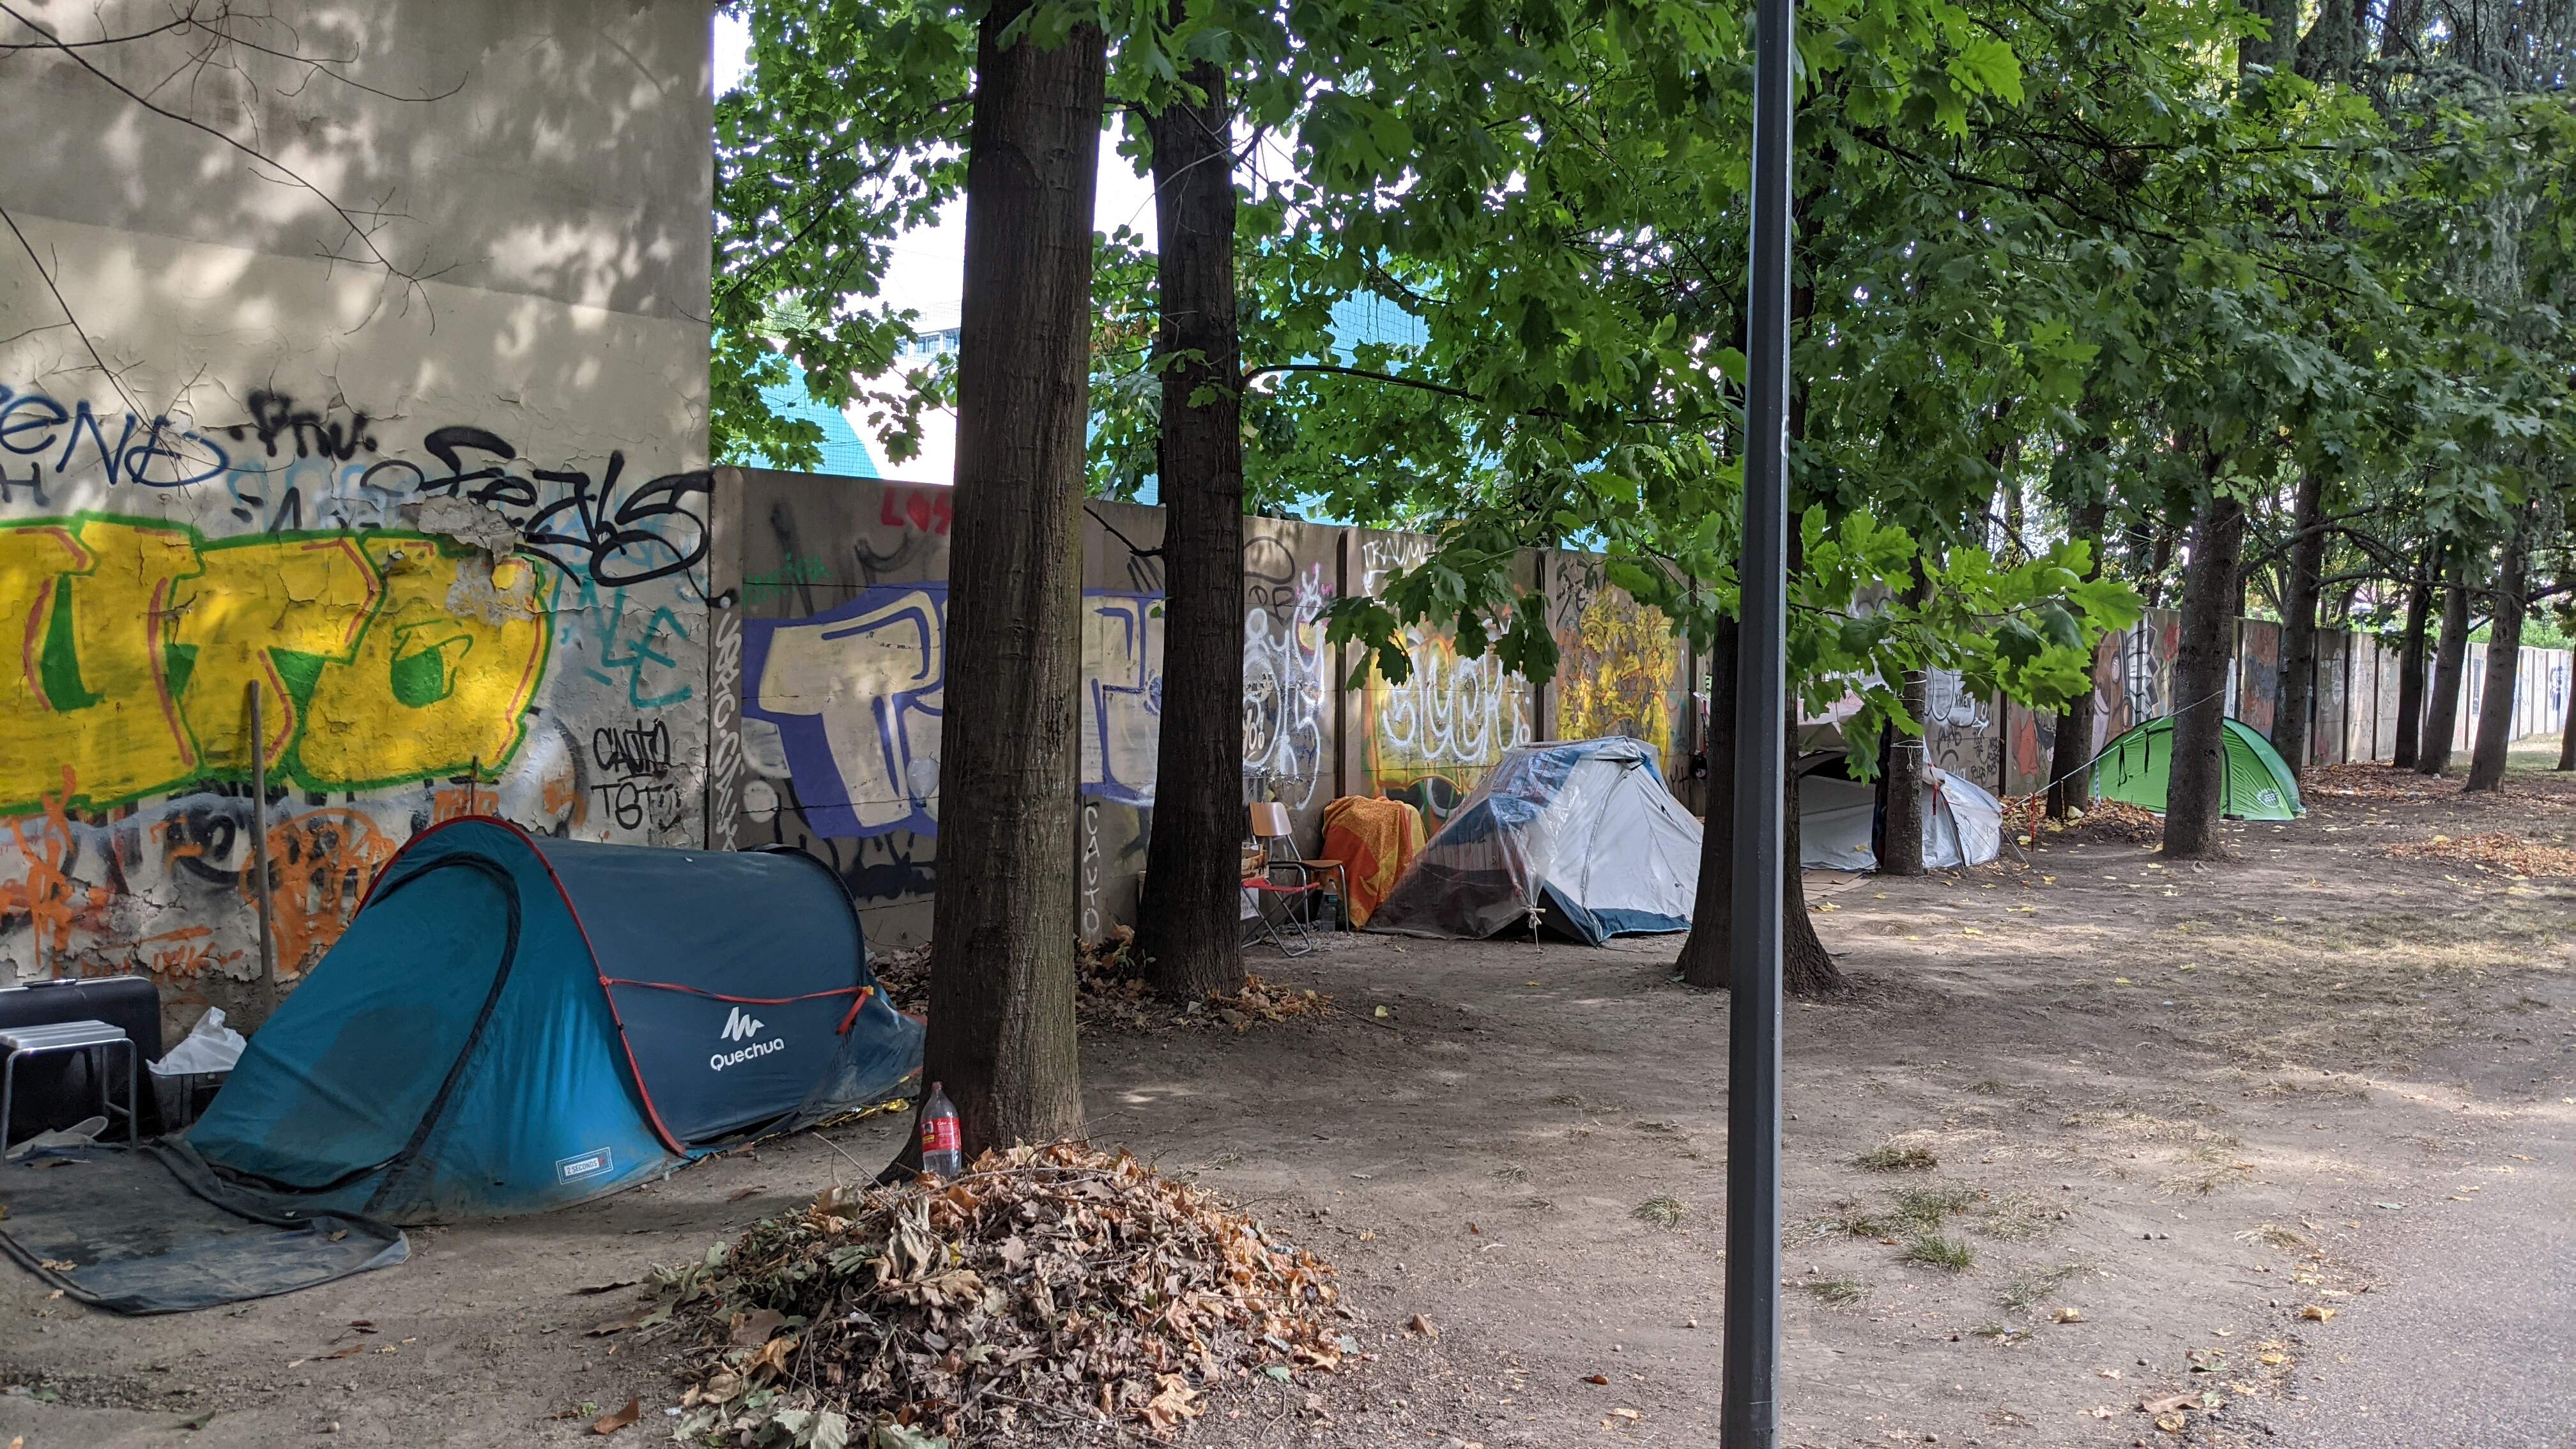 Il Comune di Milano favorisce il camping selvaggio ospitando abusivi presso la scuola della Polizia Municipale